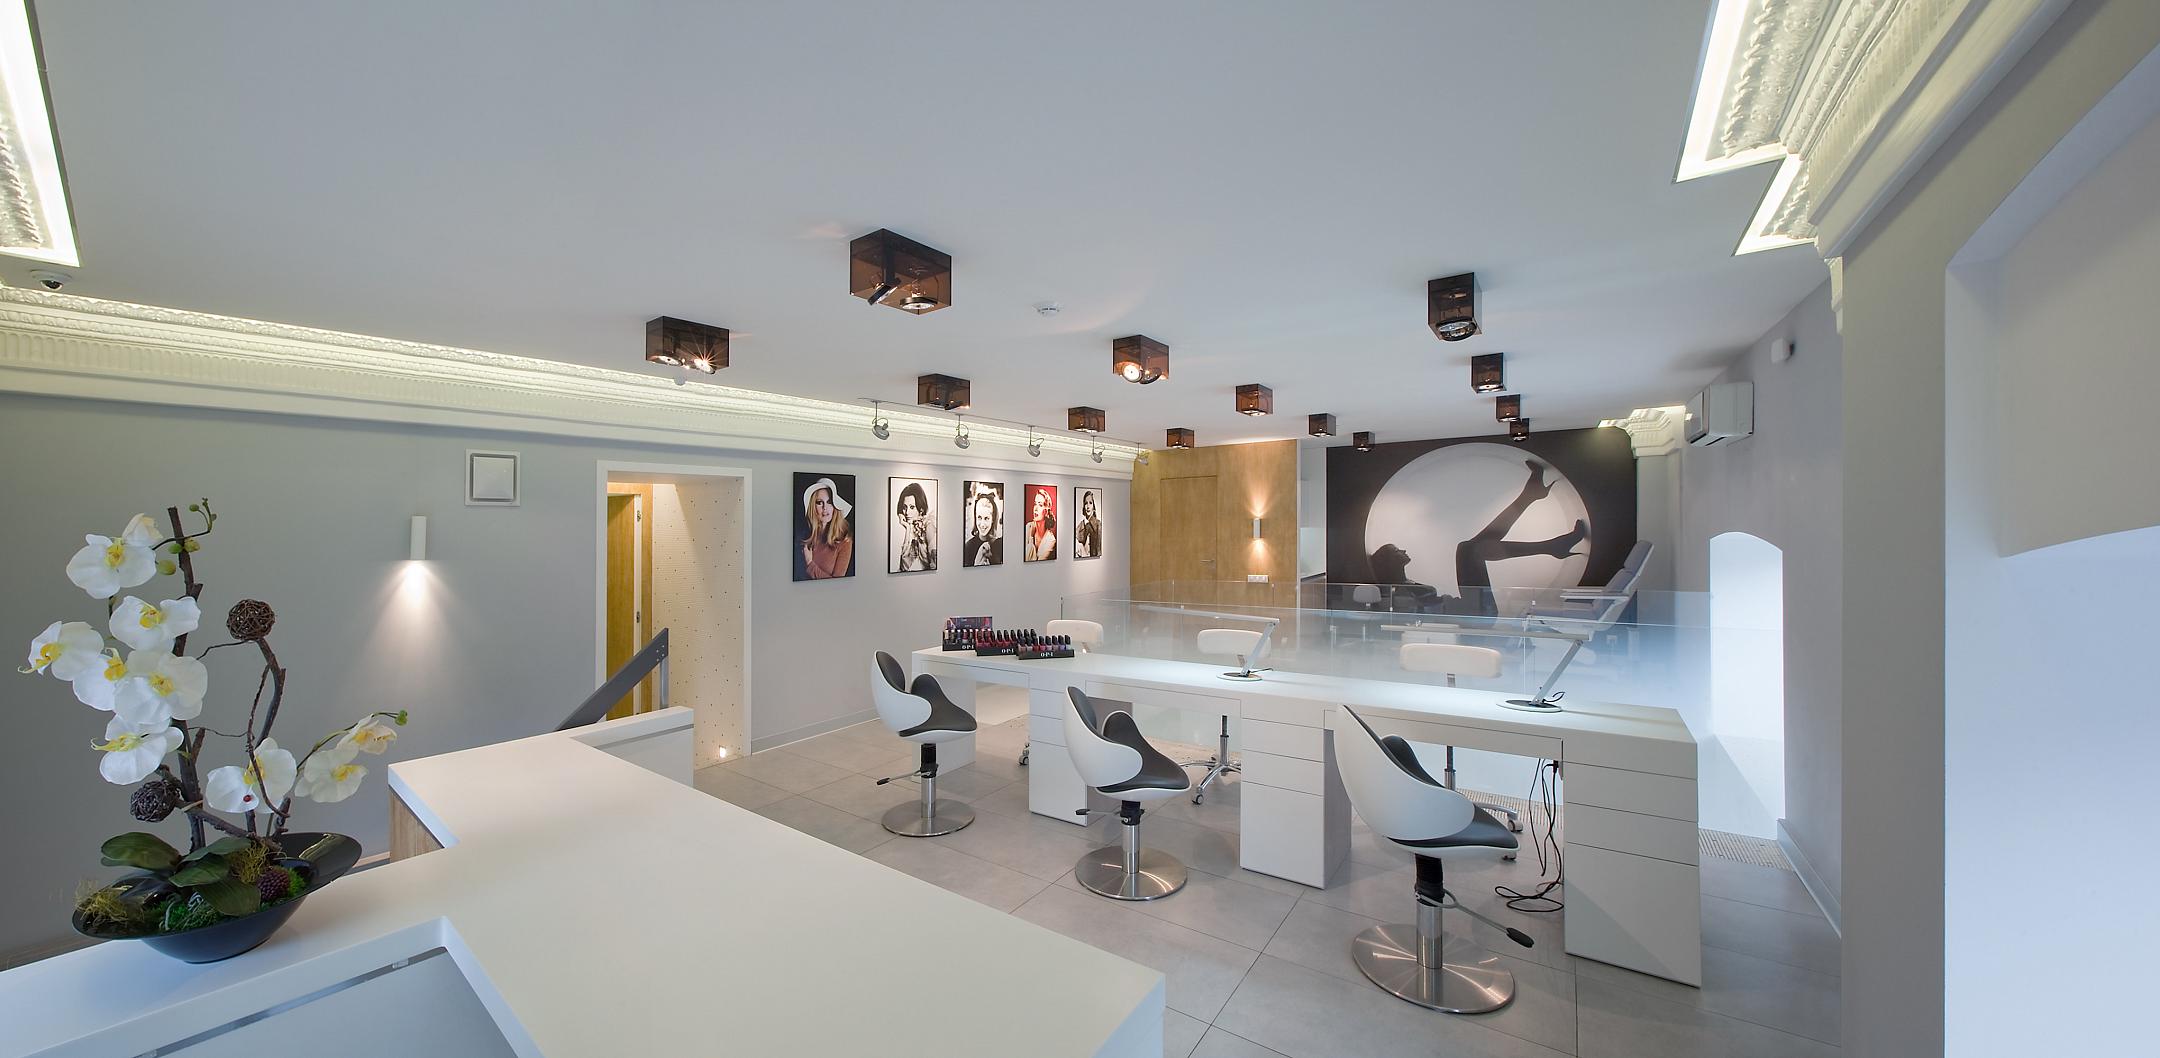 За красотой: салоны и парикмахерские с красивыми интерьерами